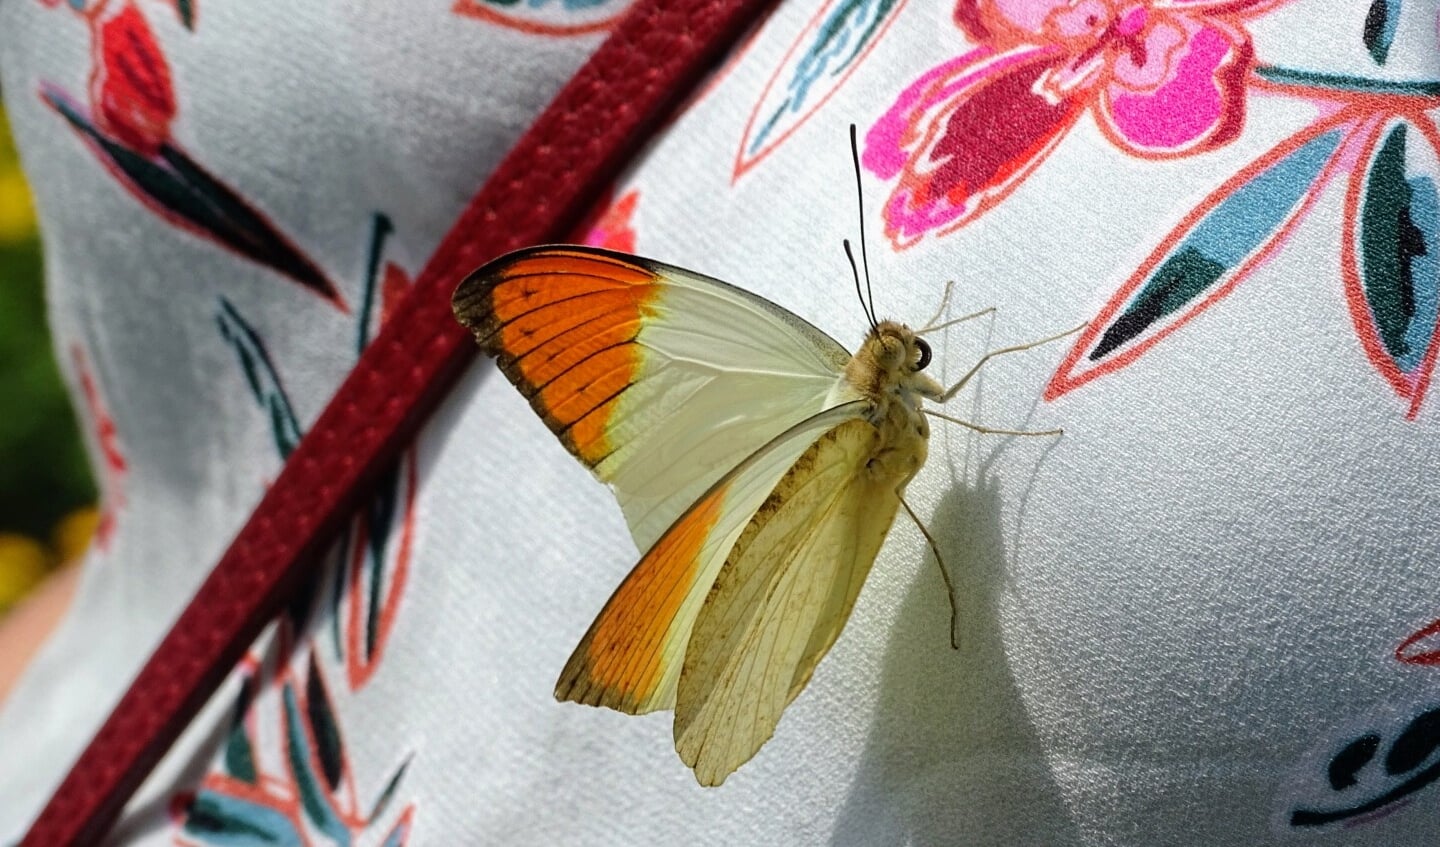 Roelof Oldenburger weet inmiddels hoe je vlinders kunt lokken, zo meldt hij met een knipoog. 